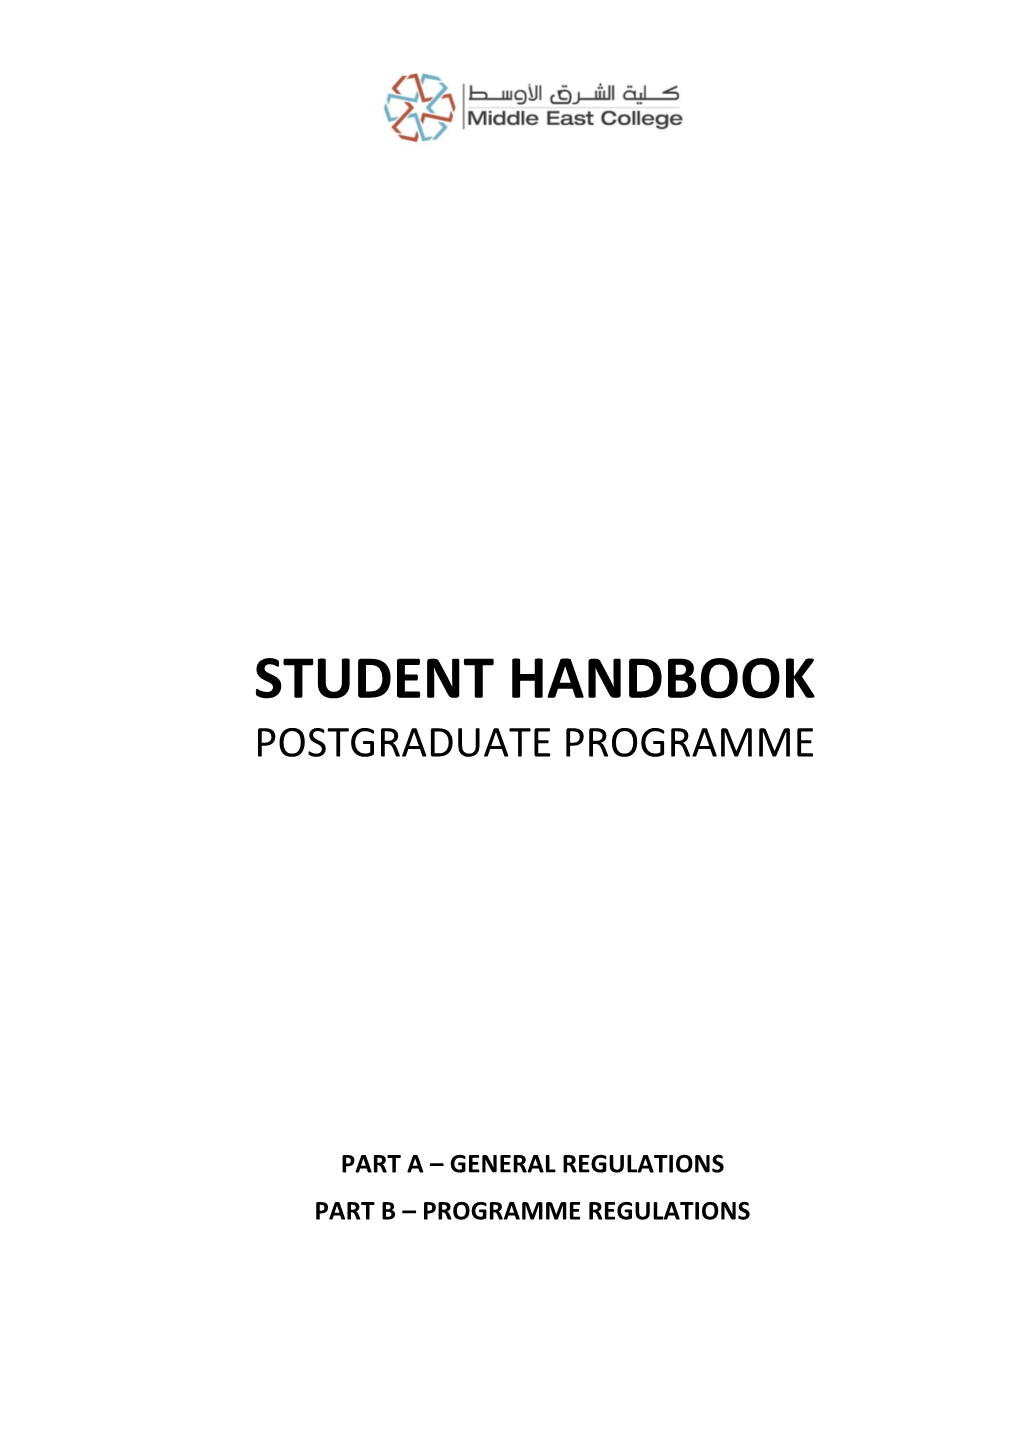 Handbook PG 2019